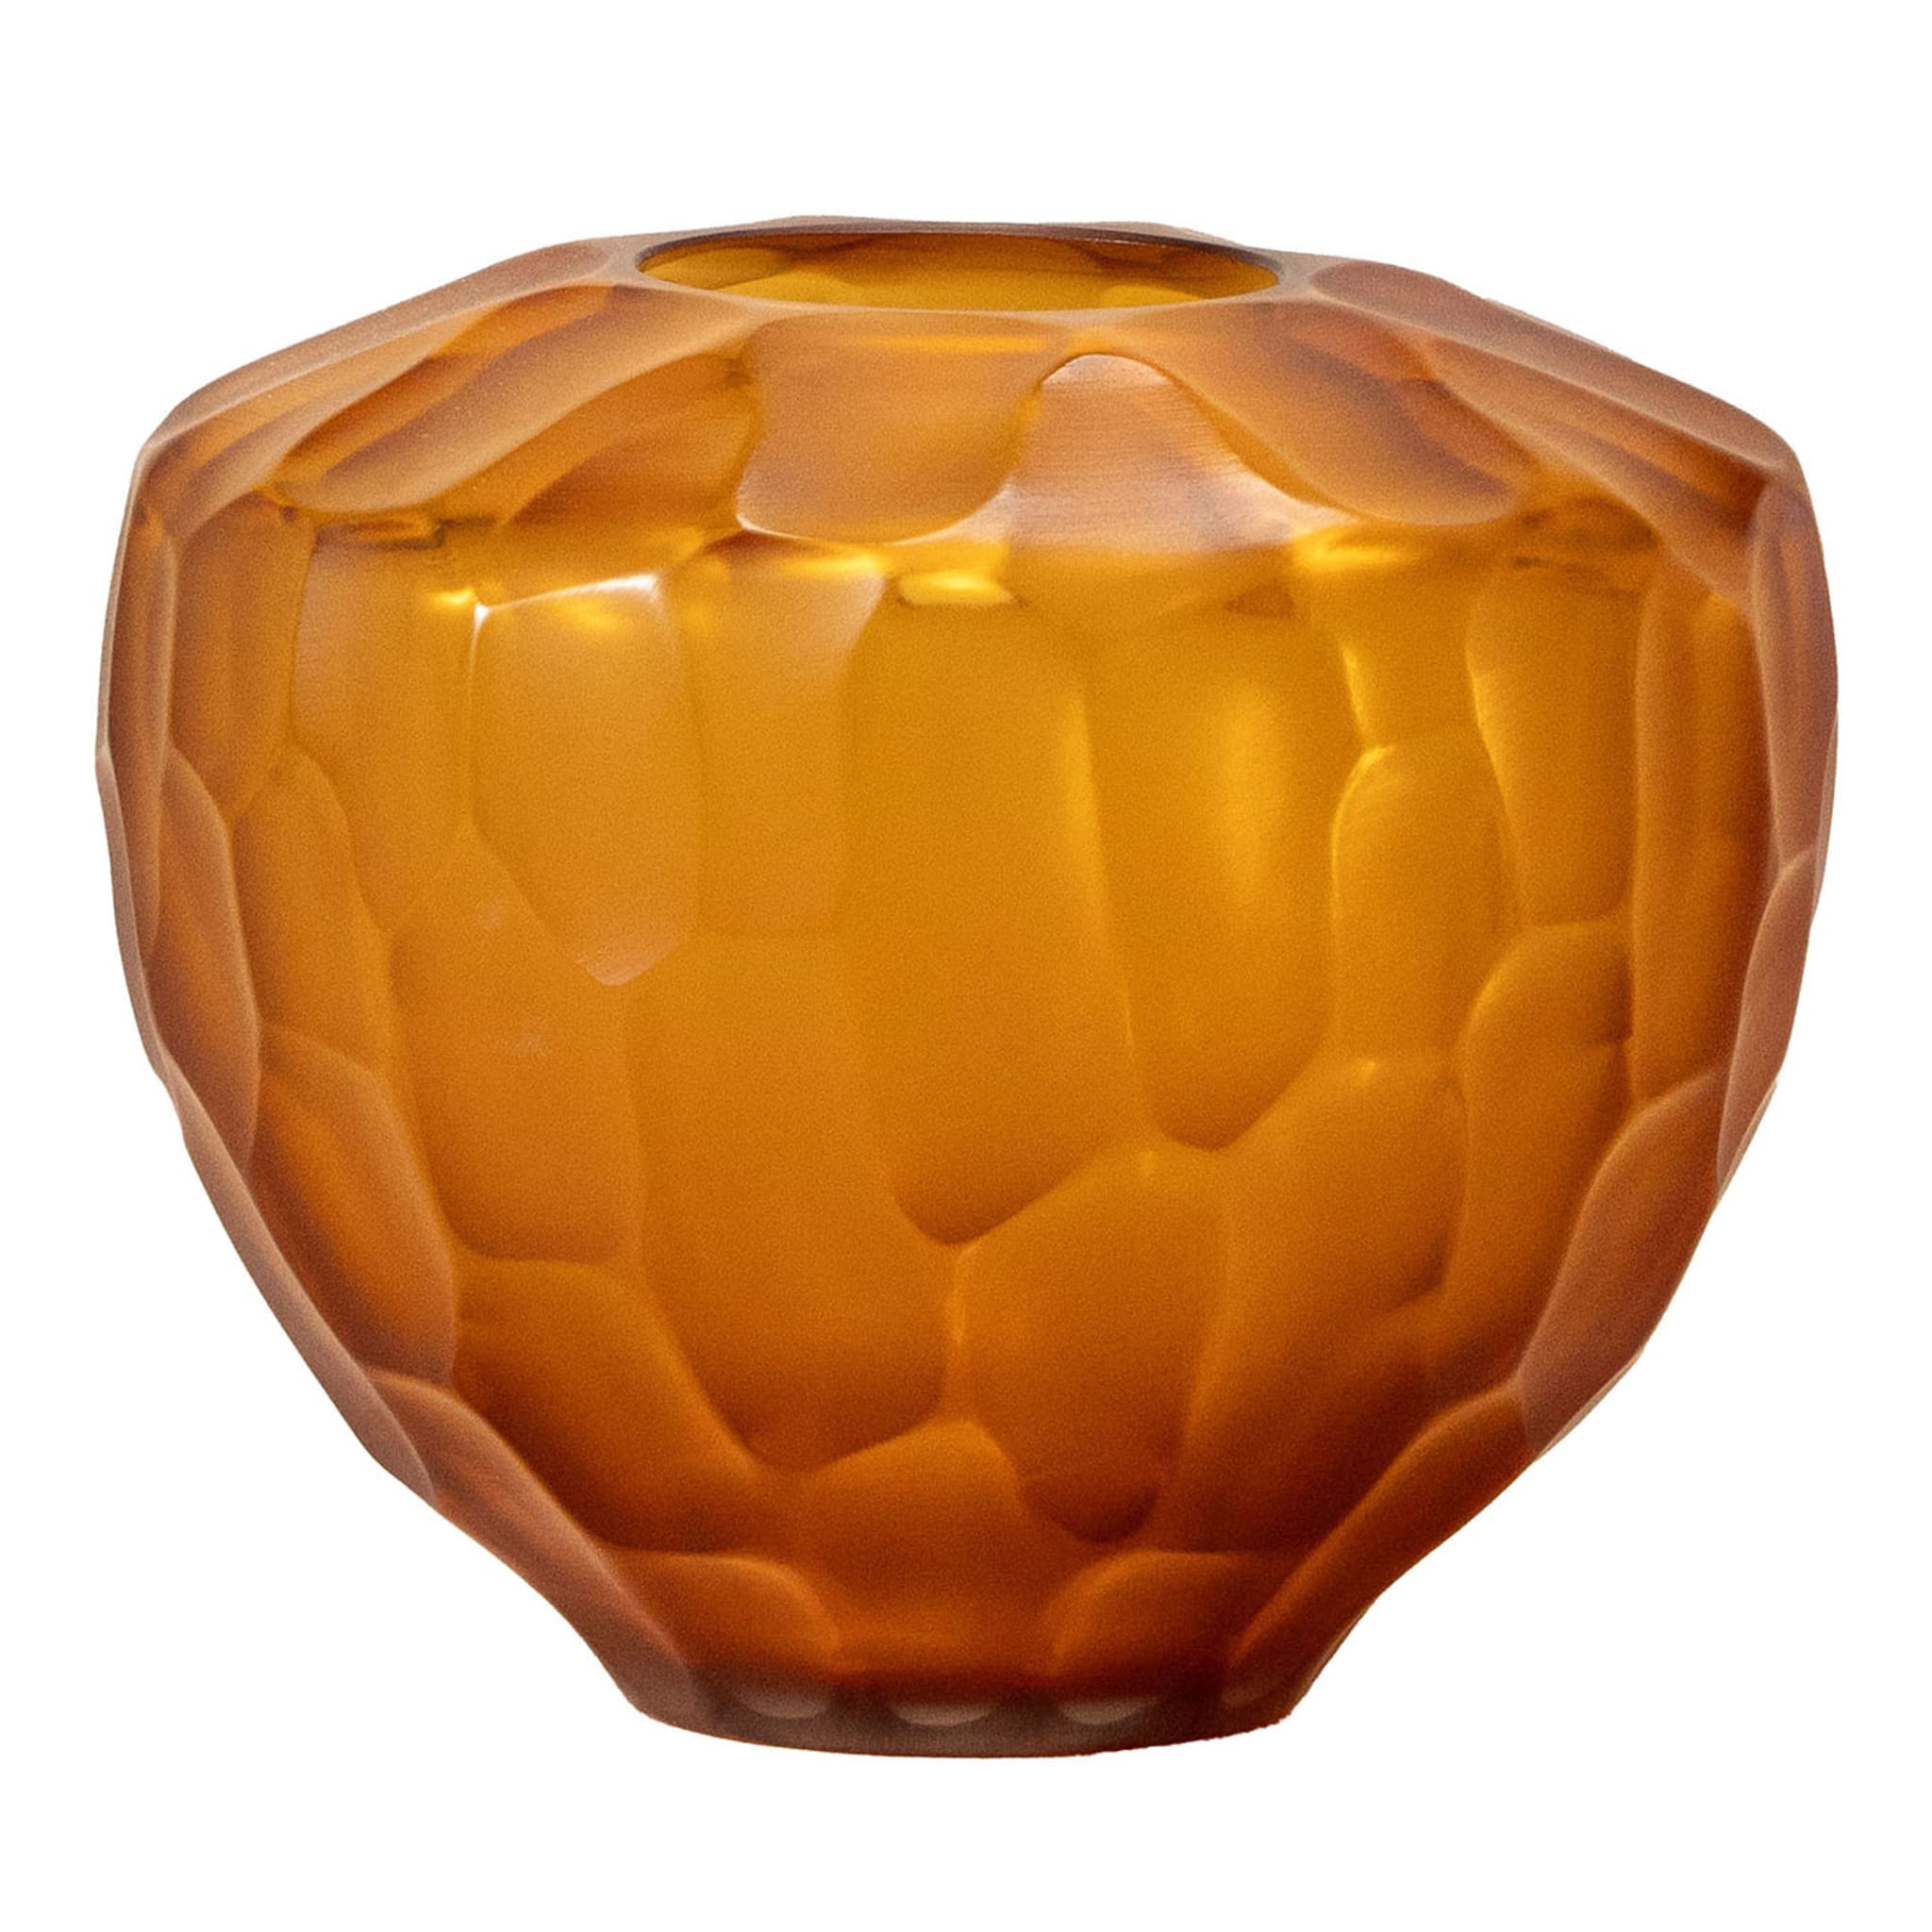 Goccia Amber Glass Vase - Main view